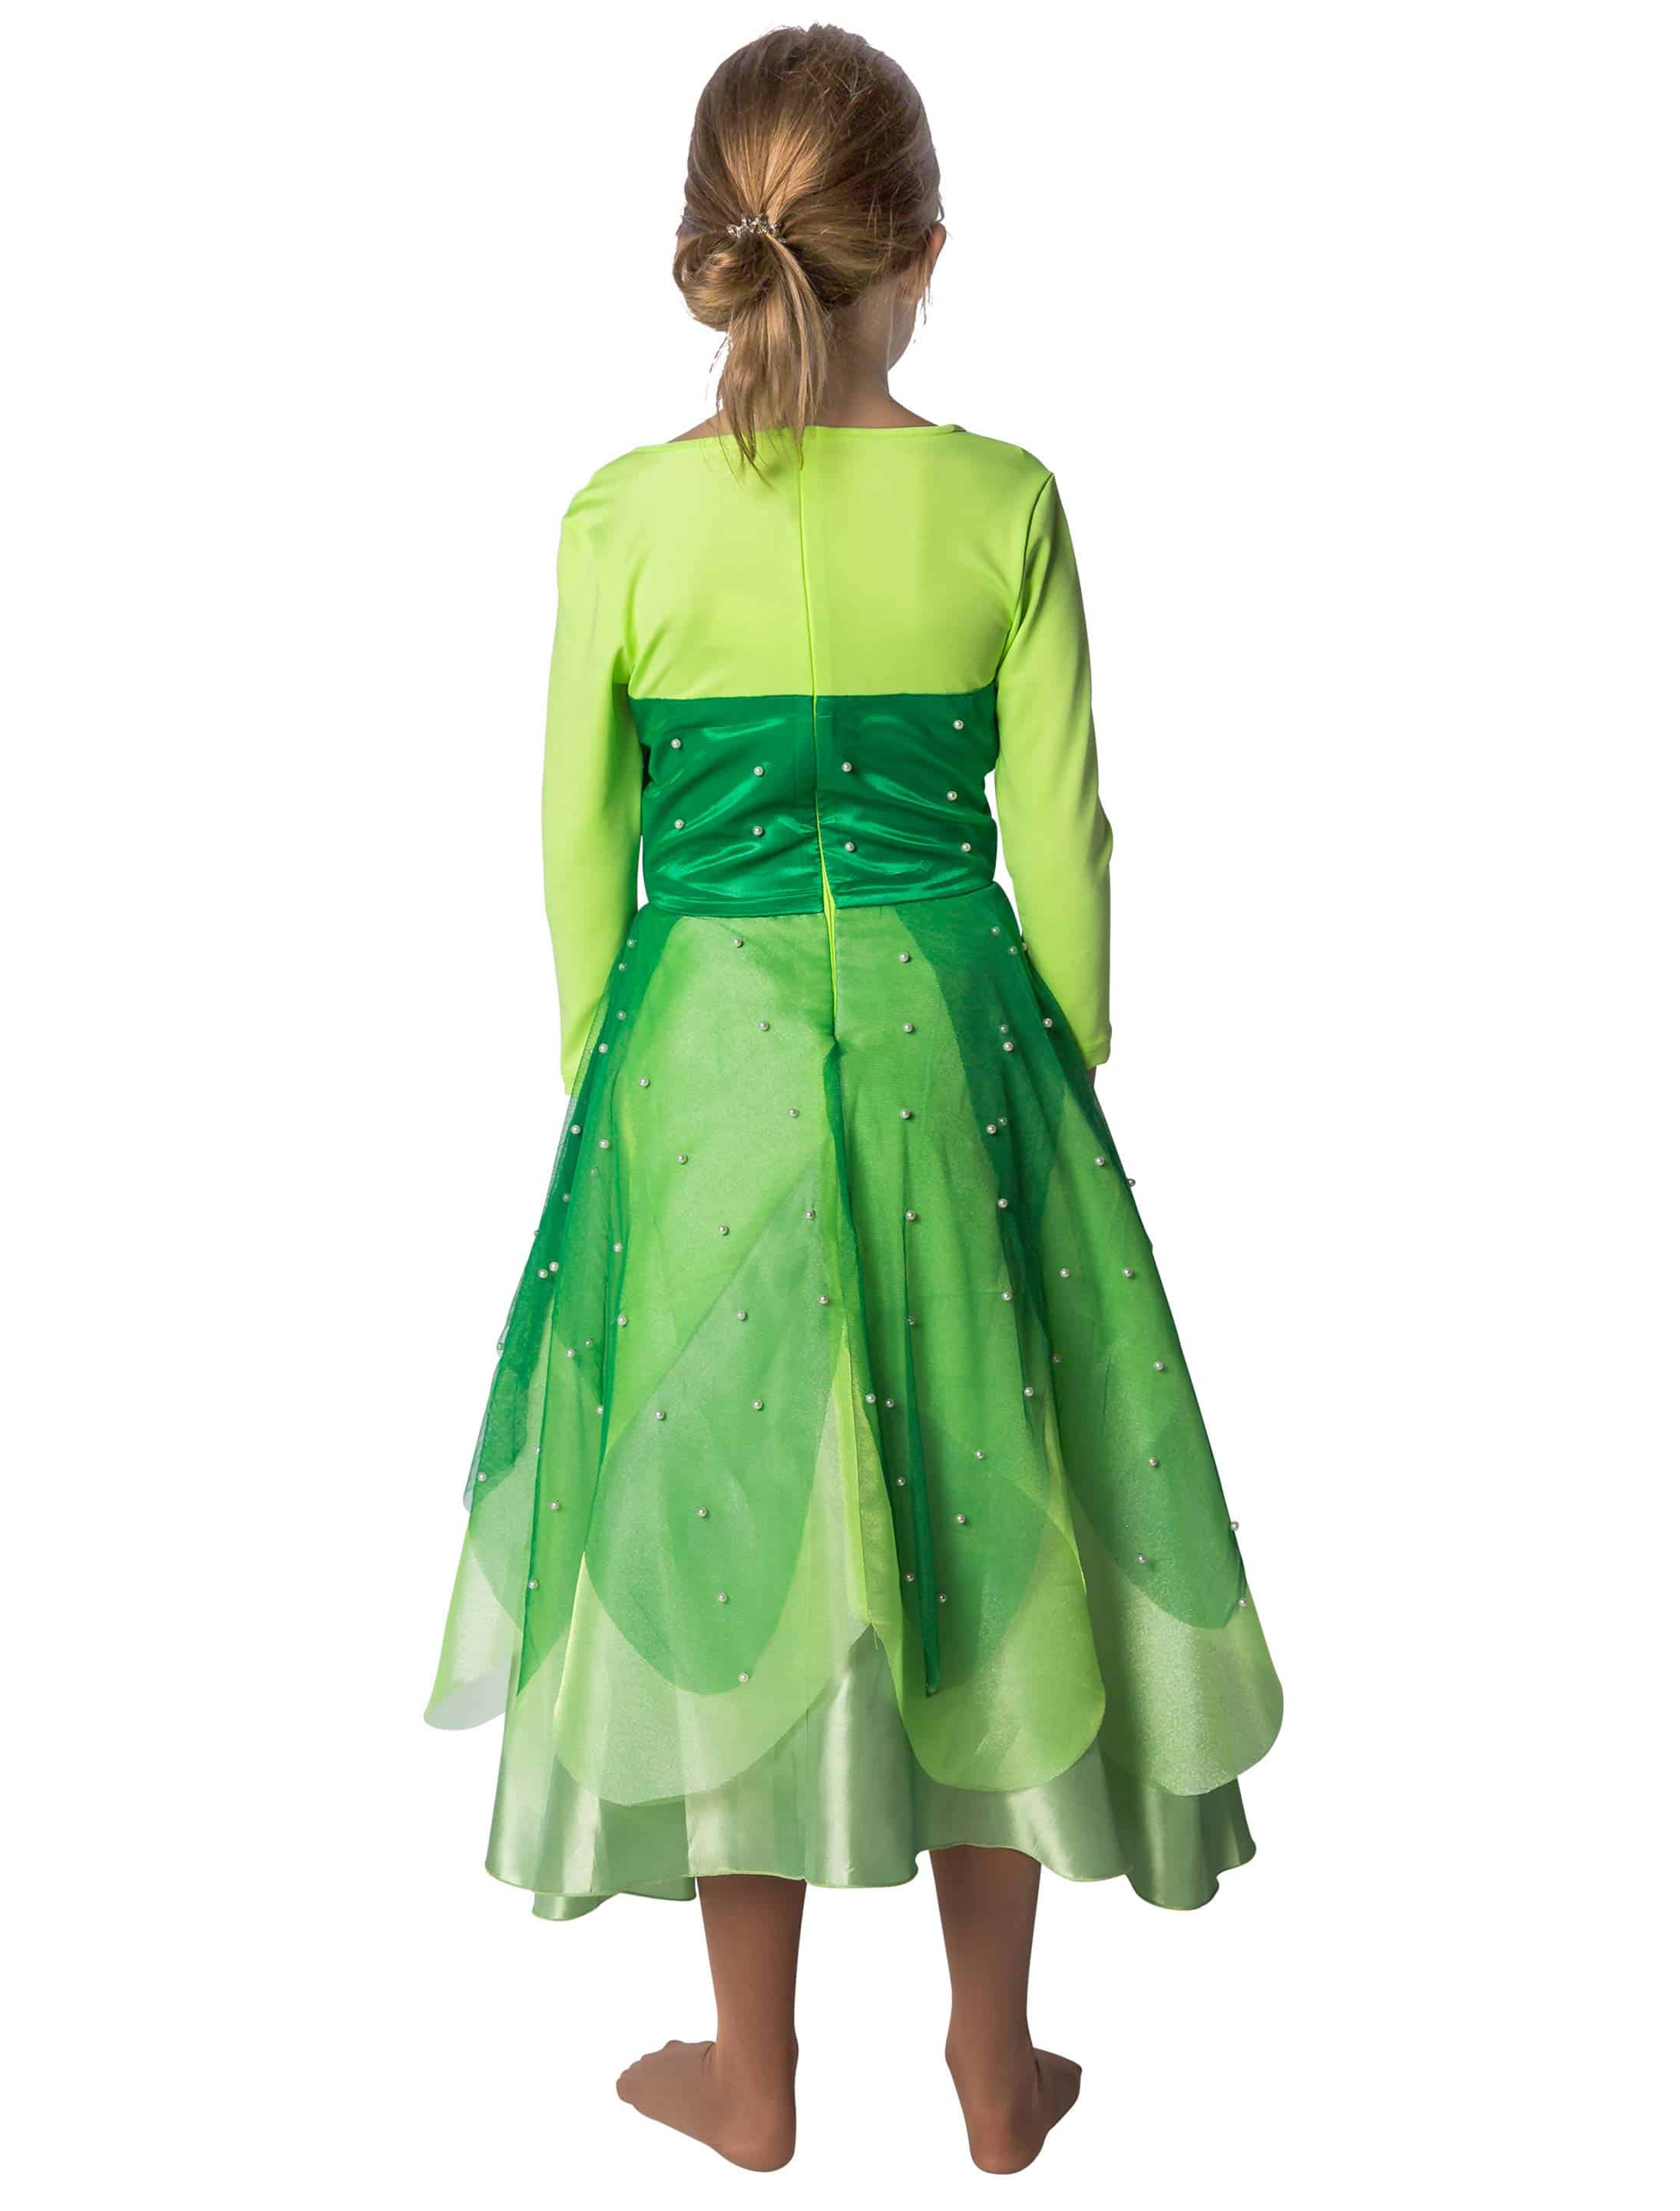 Kleid Froschkönigin Kinder grün 140